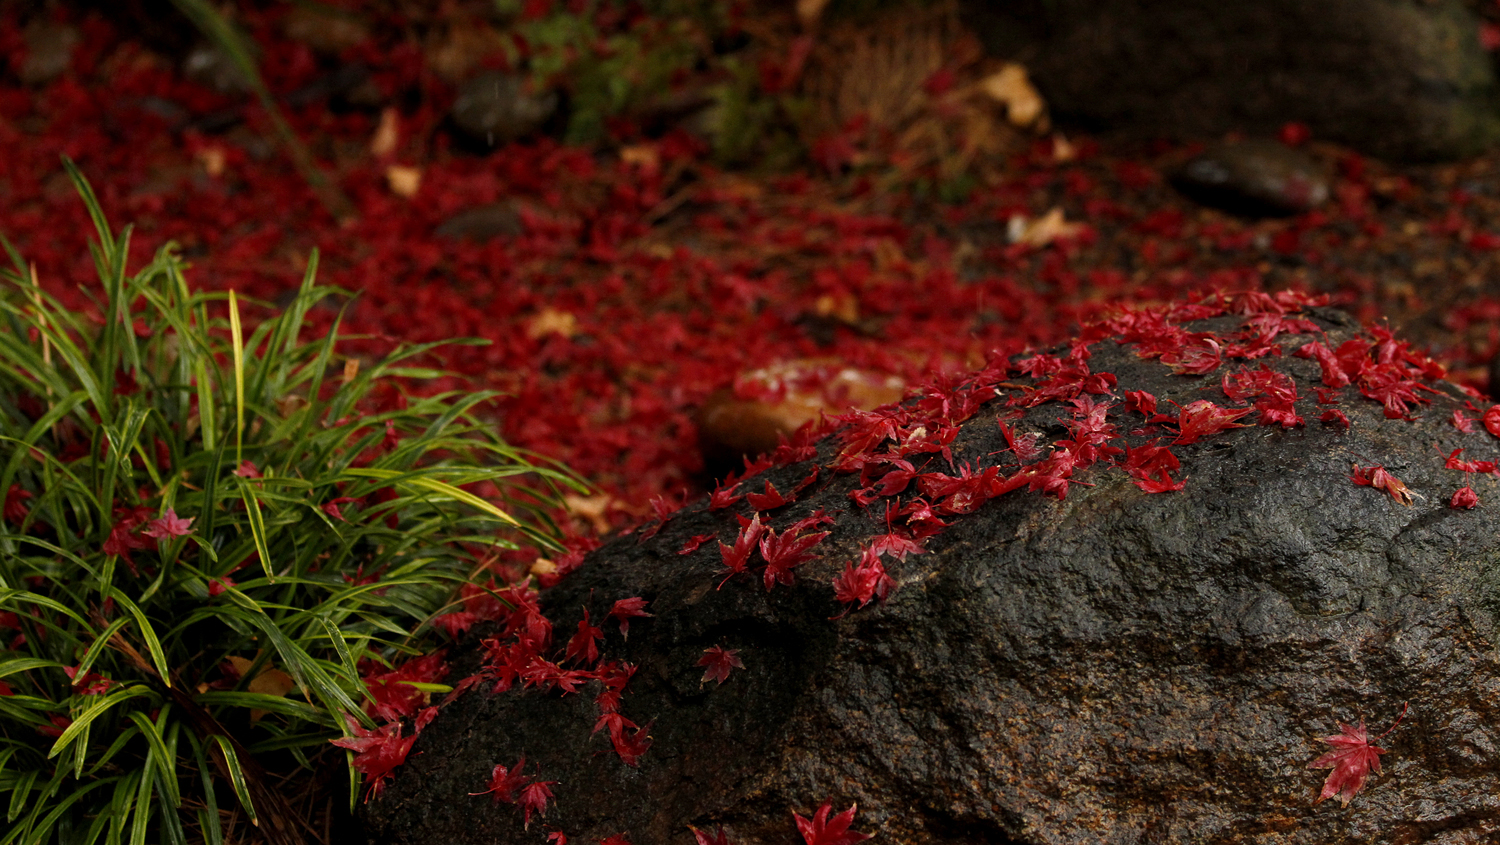 Red leaves fallen on a rock.